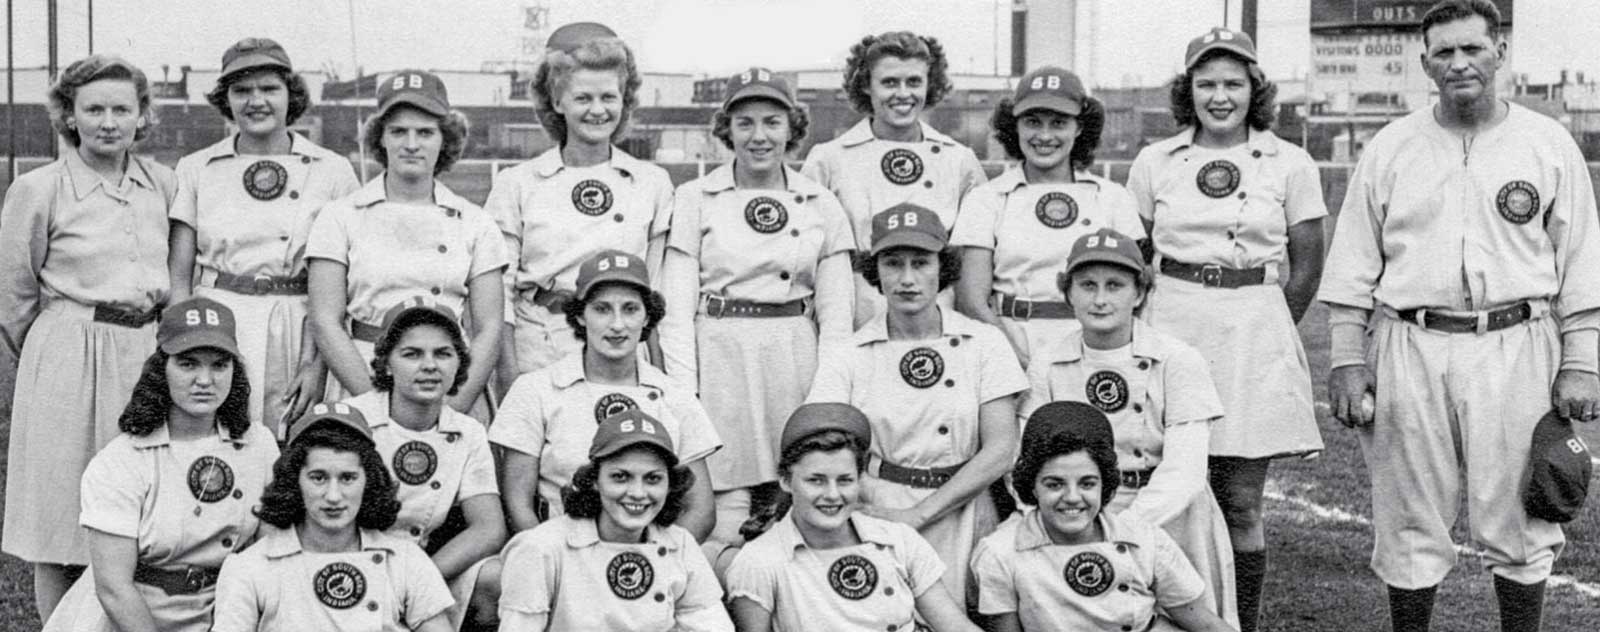 equipe feminine baseball